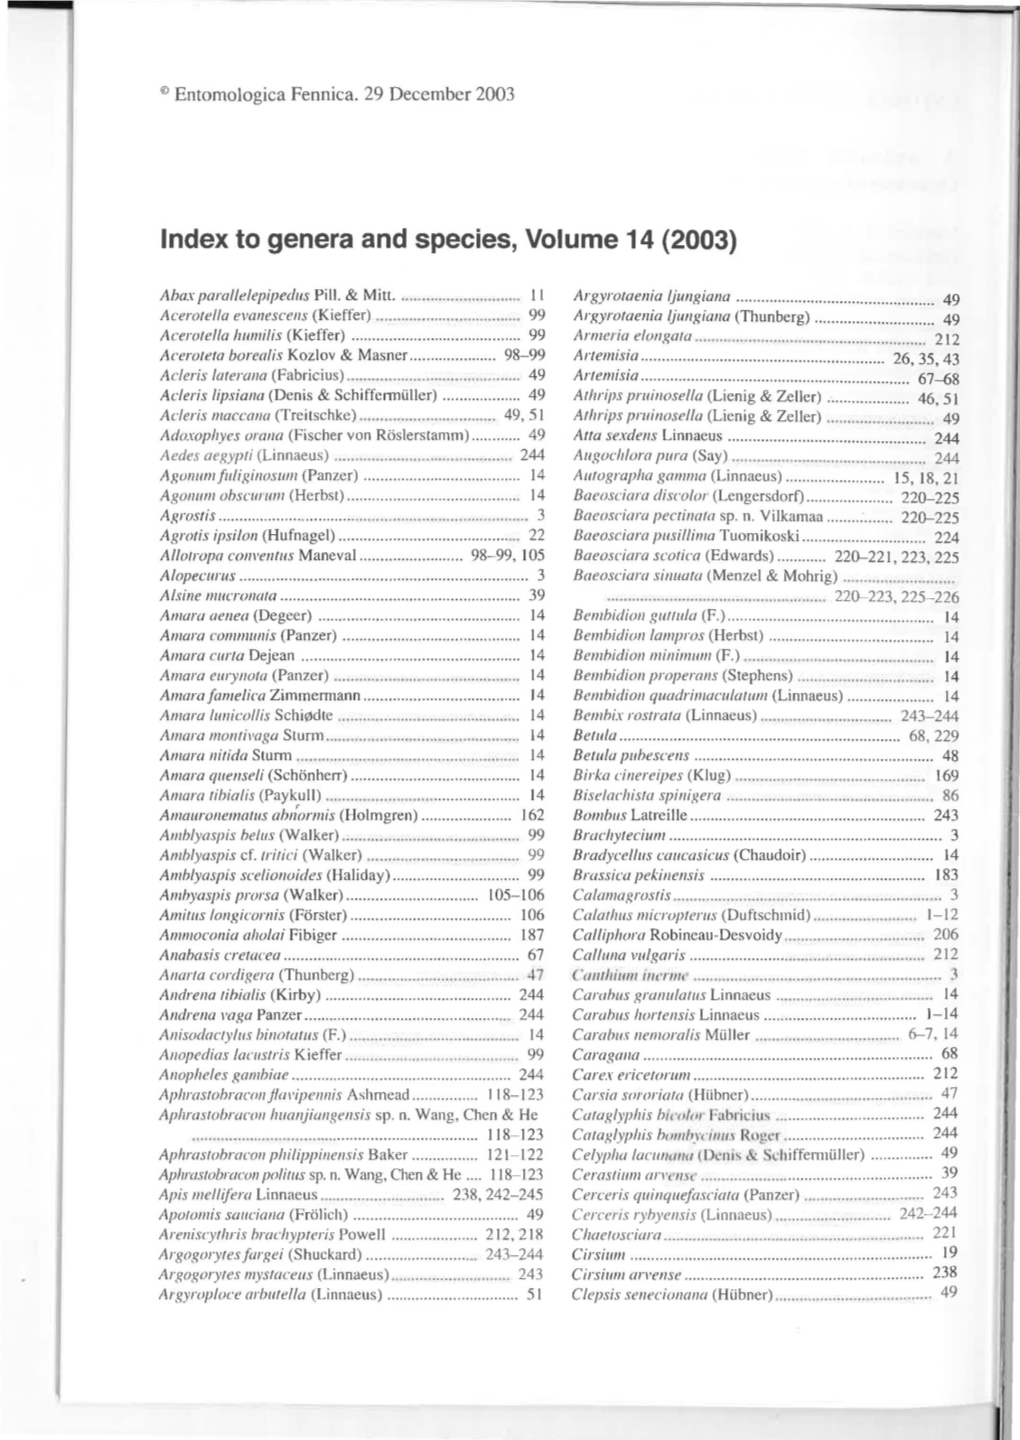 Index to Genera and Species, Volume 14 (2003)